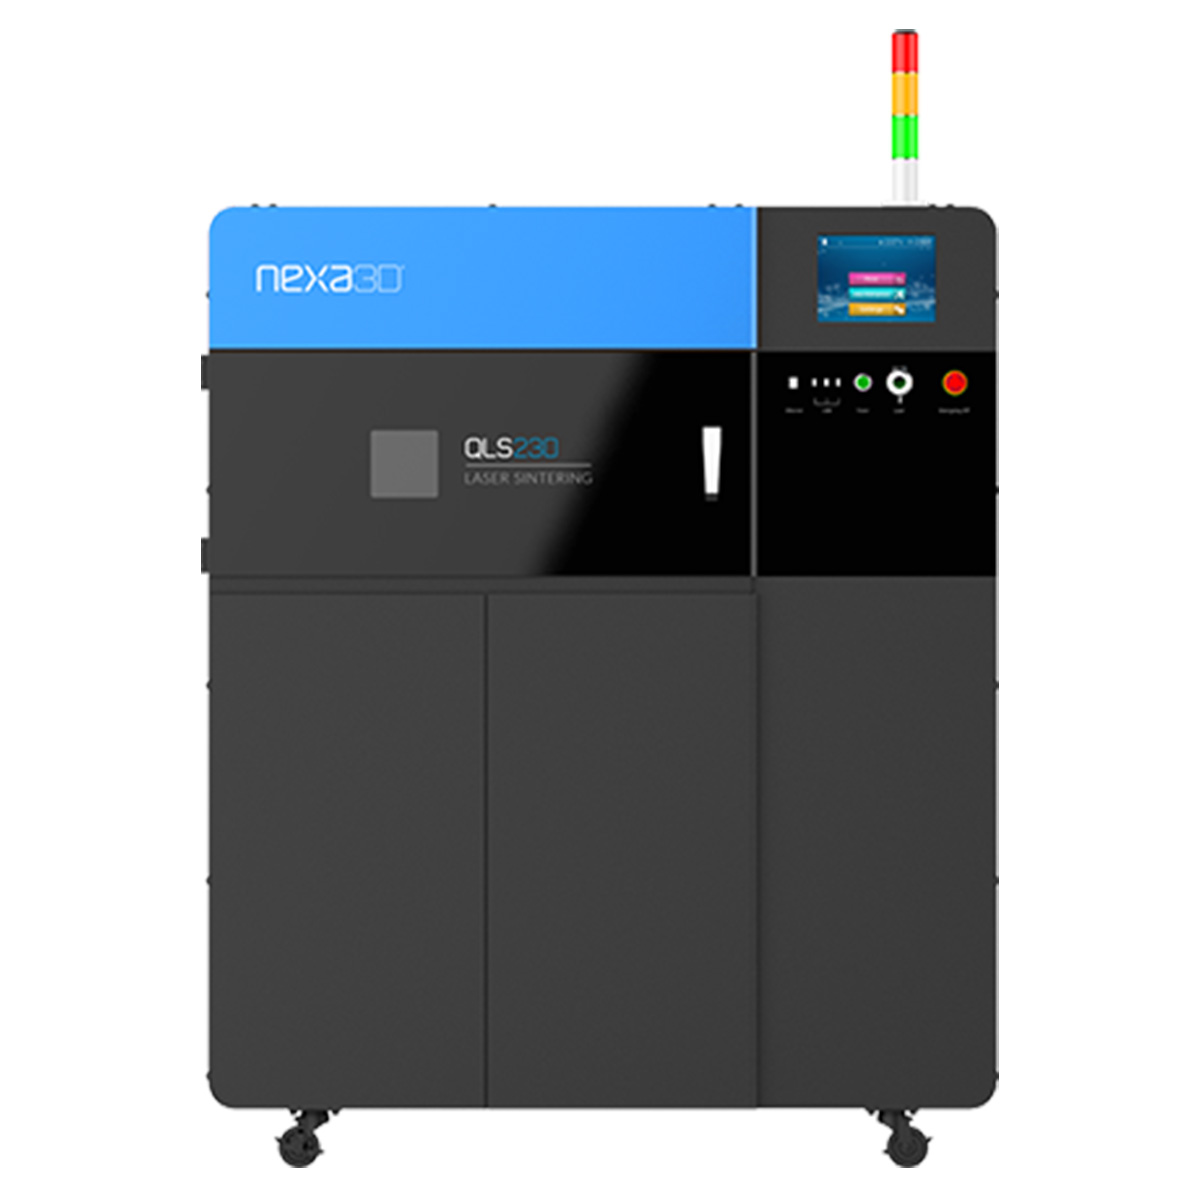 NEXA3D QLS230 SLS 3D Printer